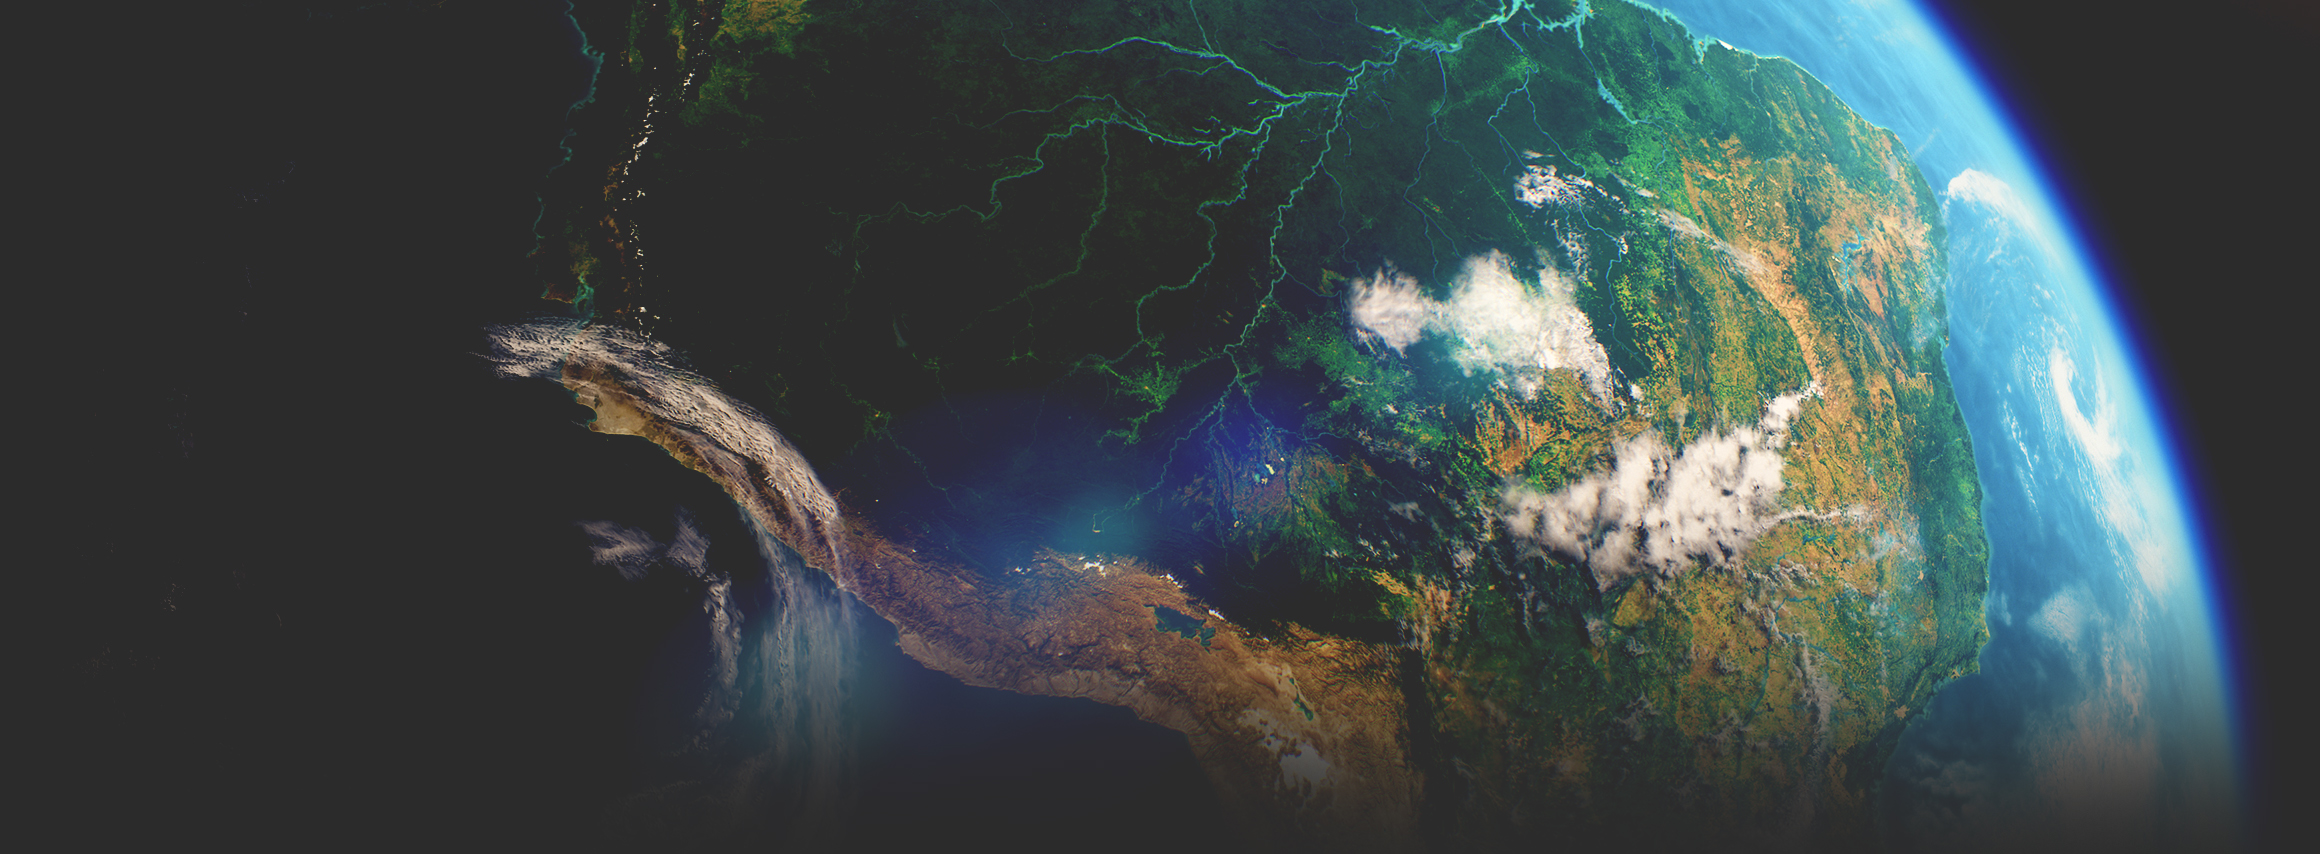 Le immagini satellitari prese dallo spazio mostrano un continente verde con un fiume che lo attraversa, l'oceano e l'atmosfera